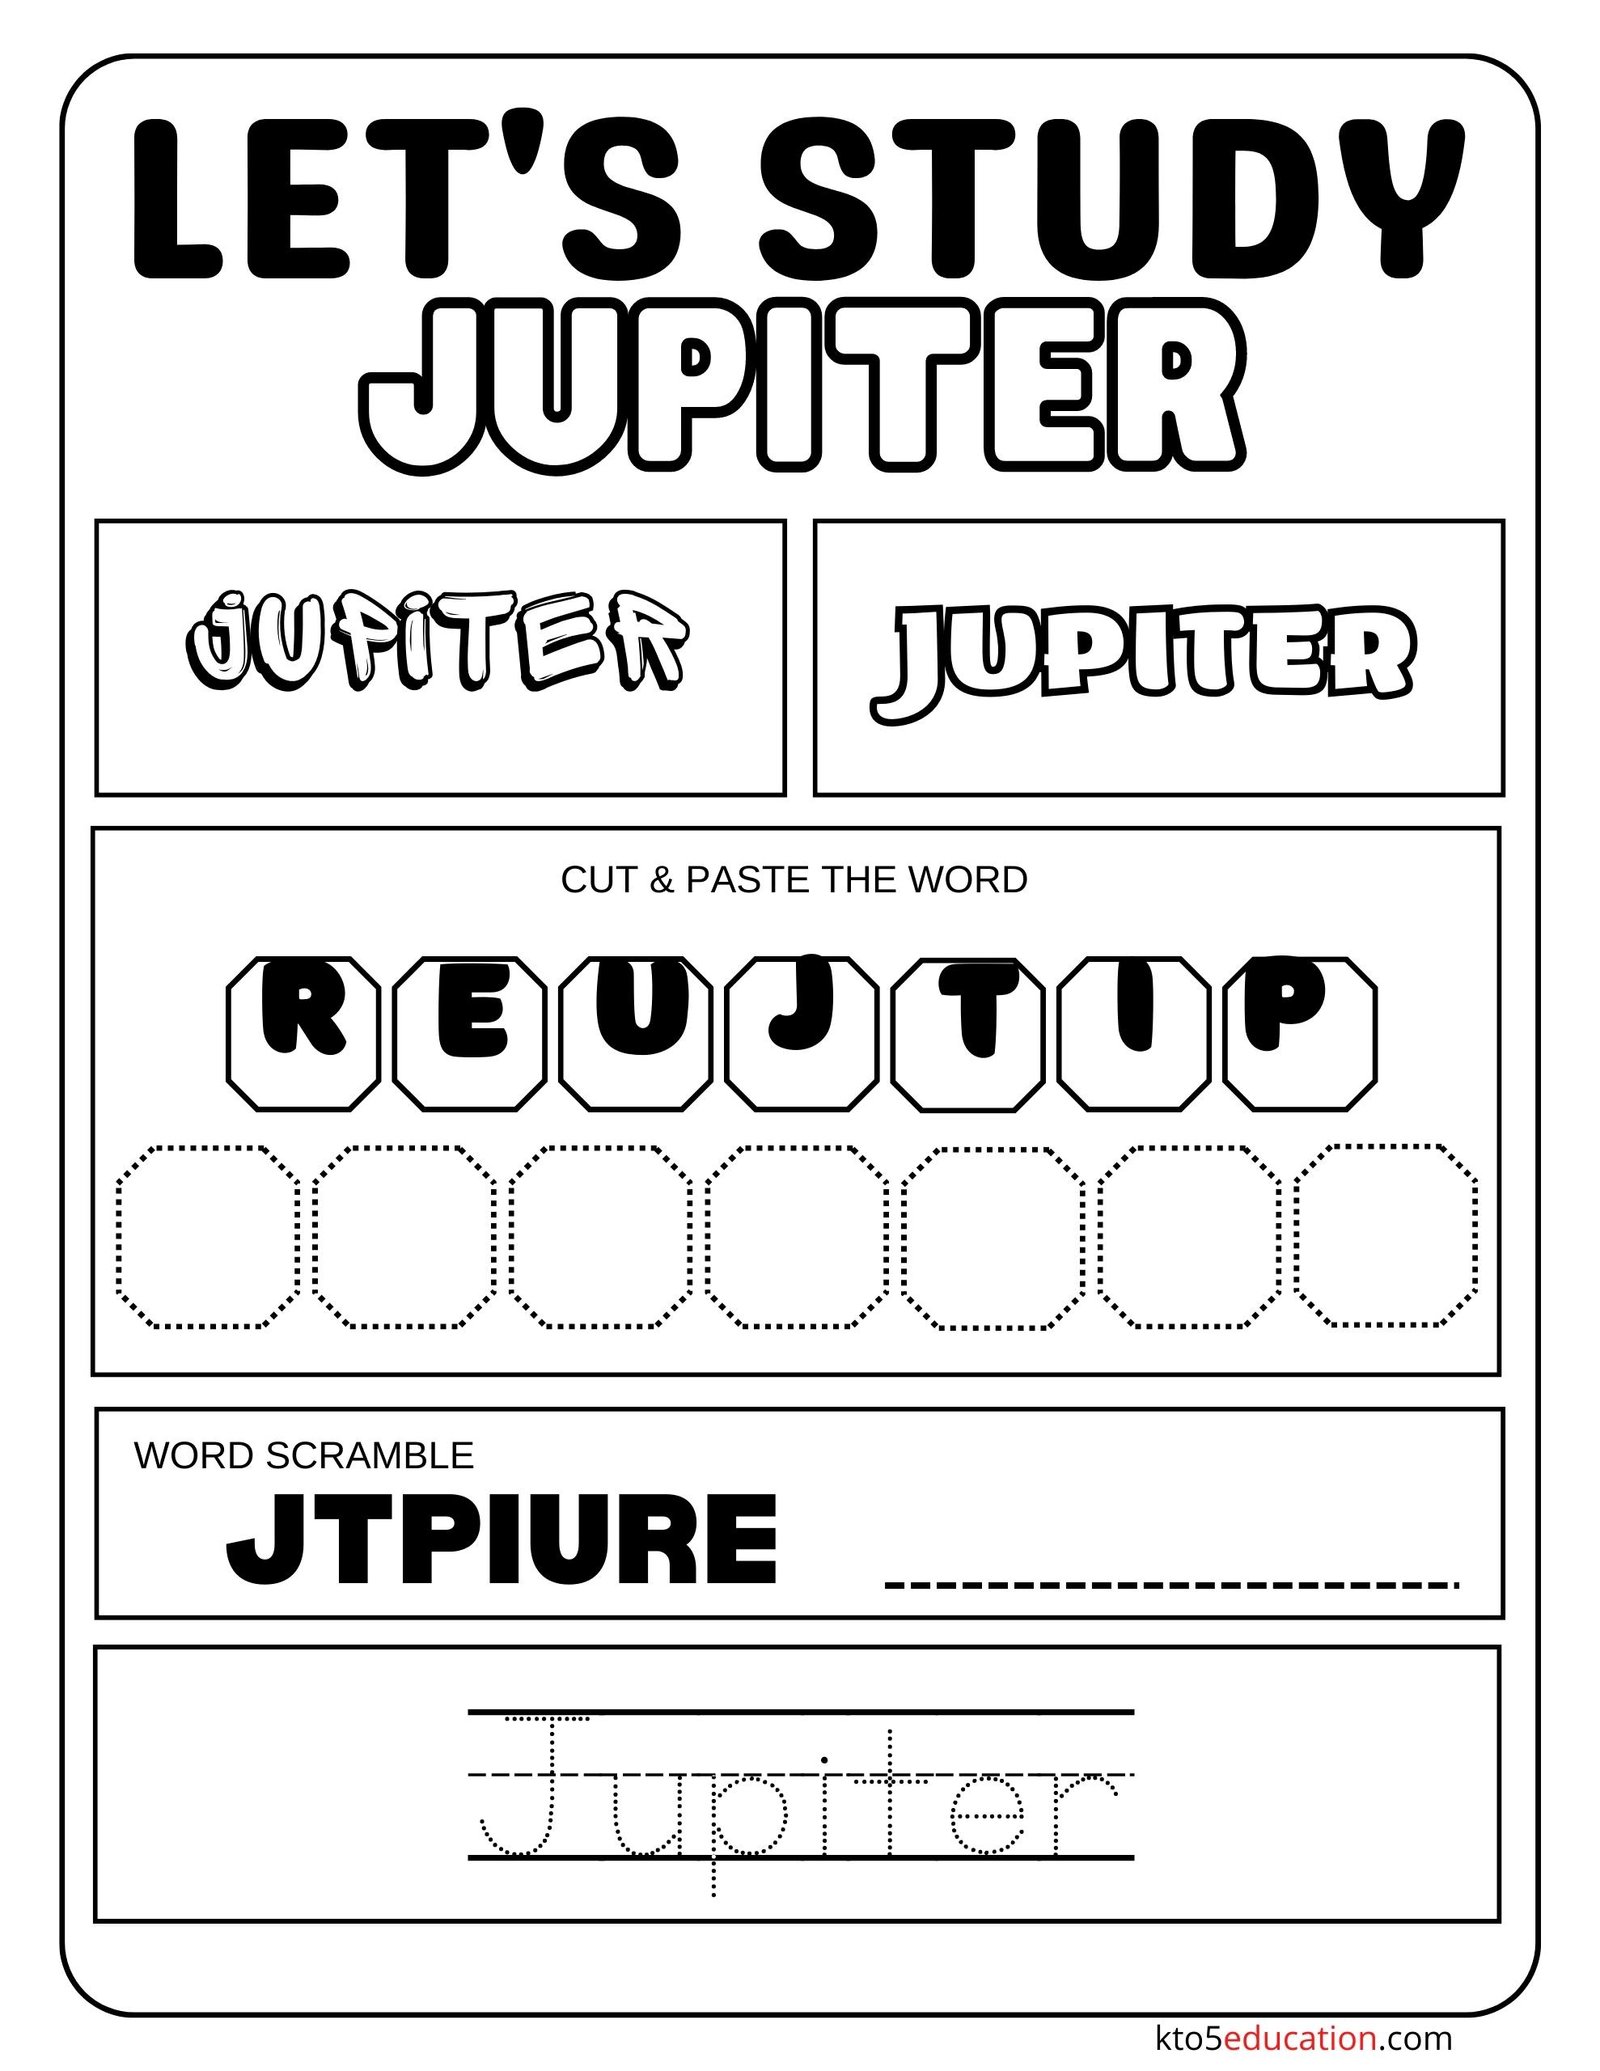 Let's Study Jupiter Worksheet